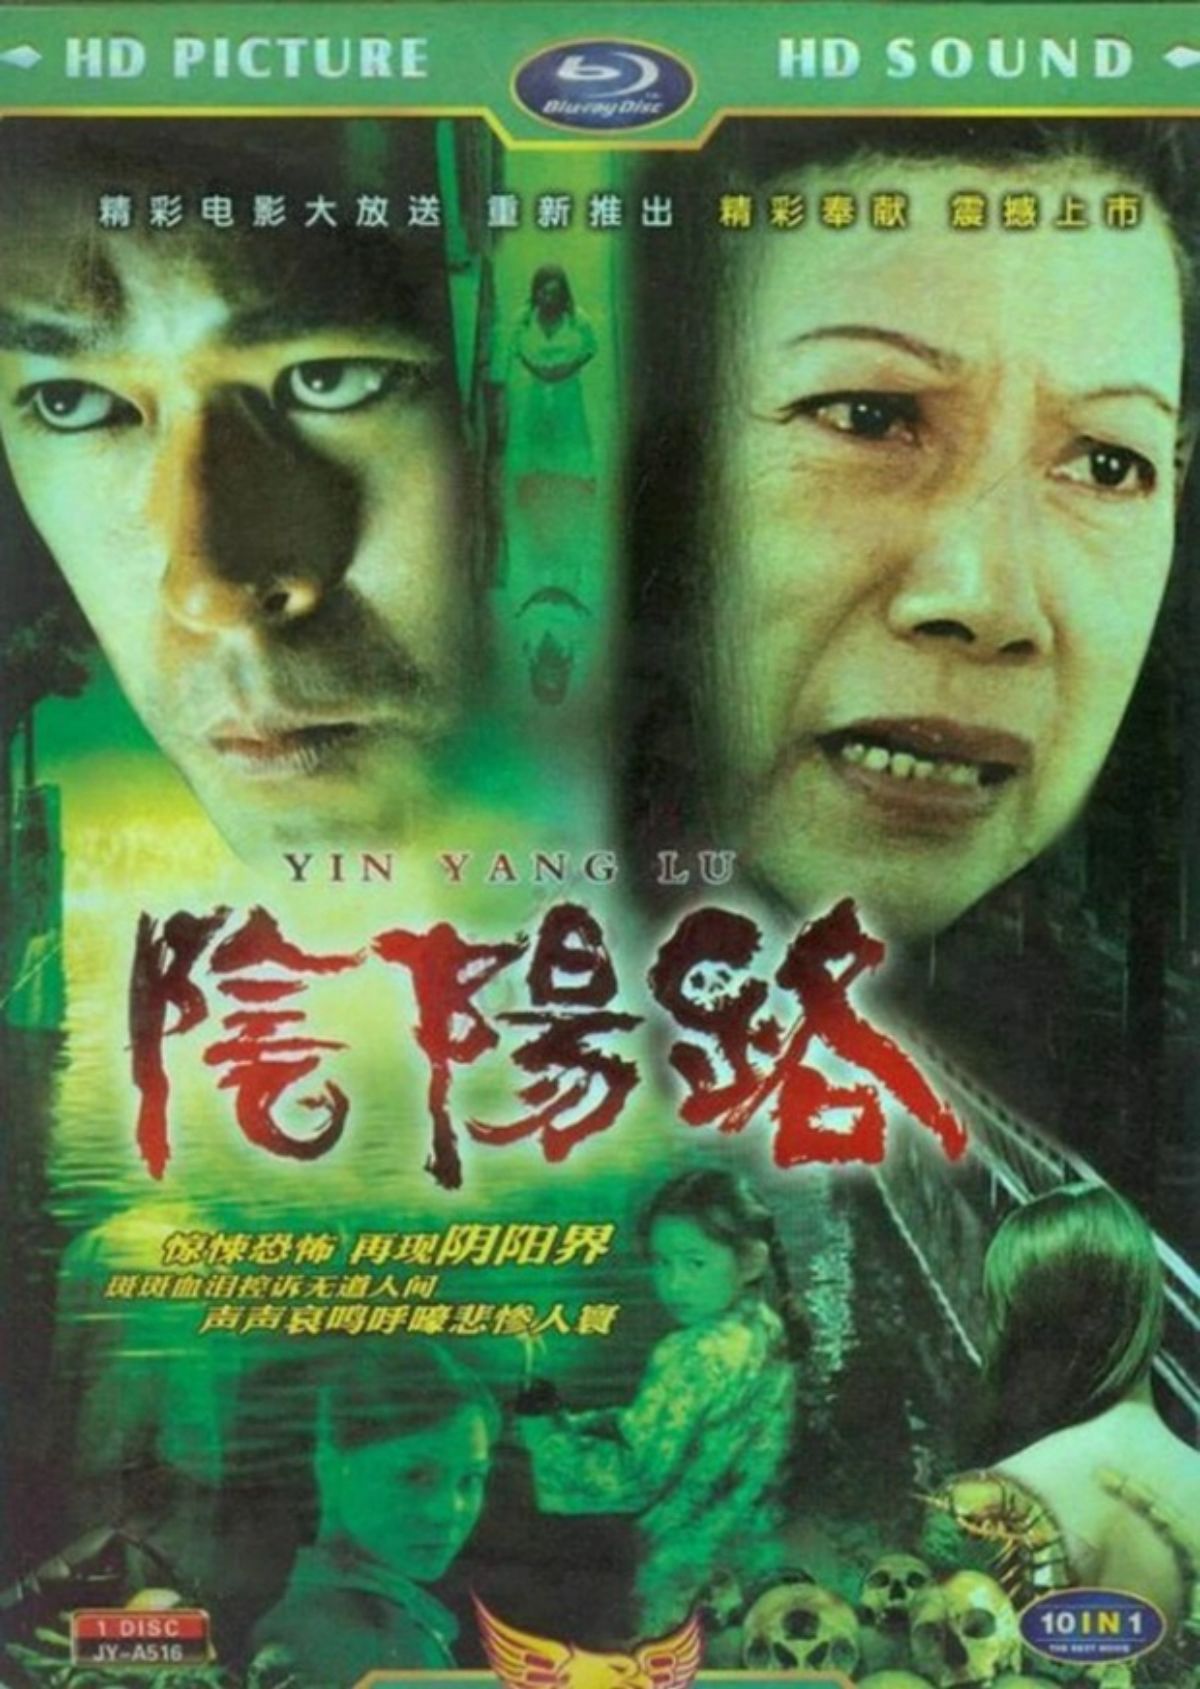 Âm Dương Lộ là series phim kinh dị Trung Quốc gồm có 7 phần, nam diễn viên Cổ Thiên Lạc đóng chính từ phần 2